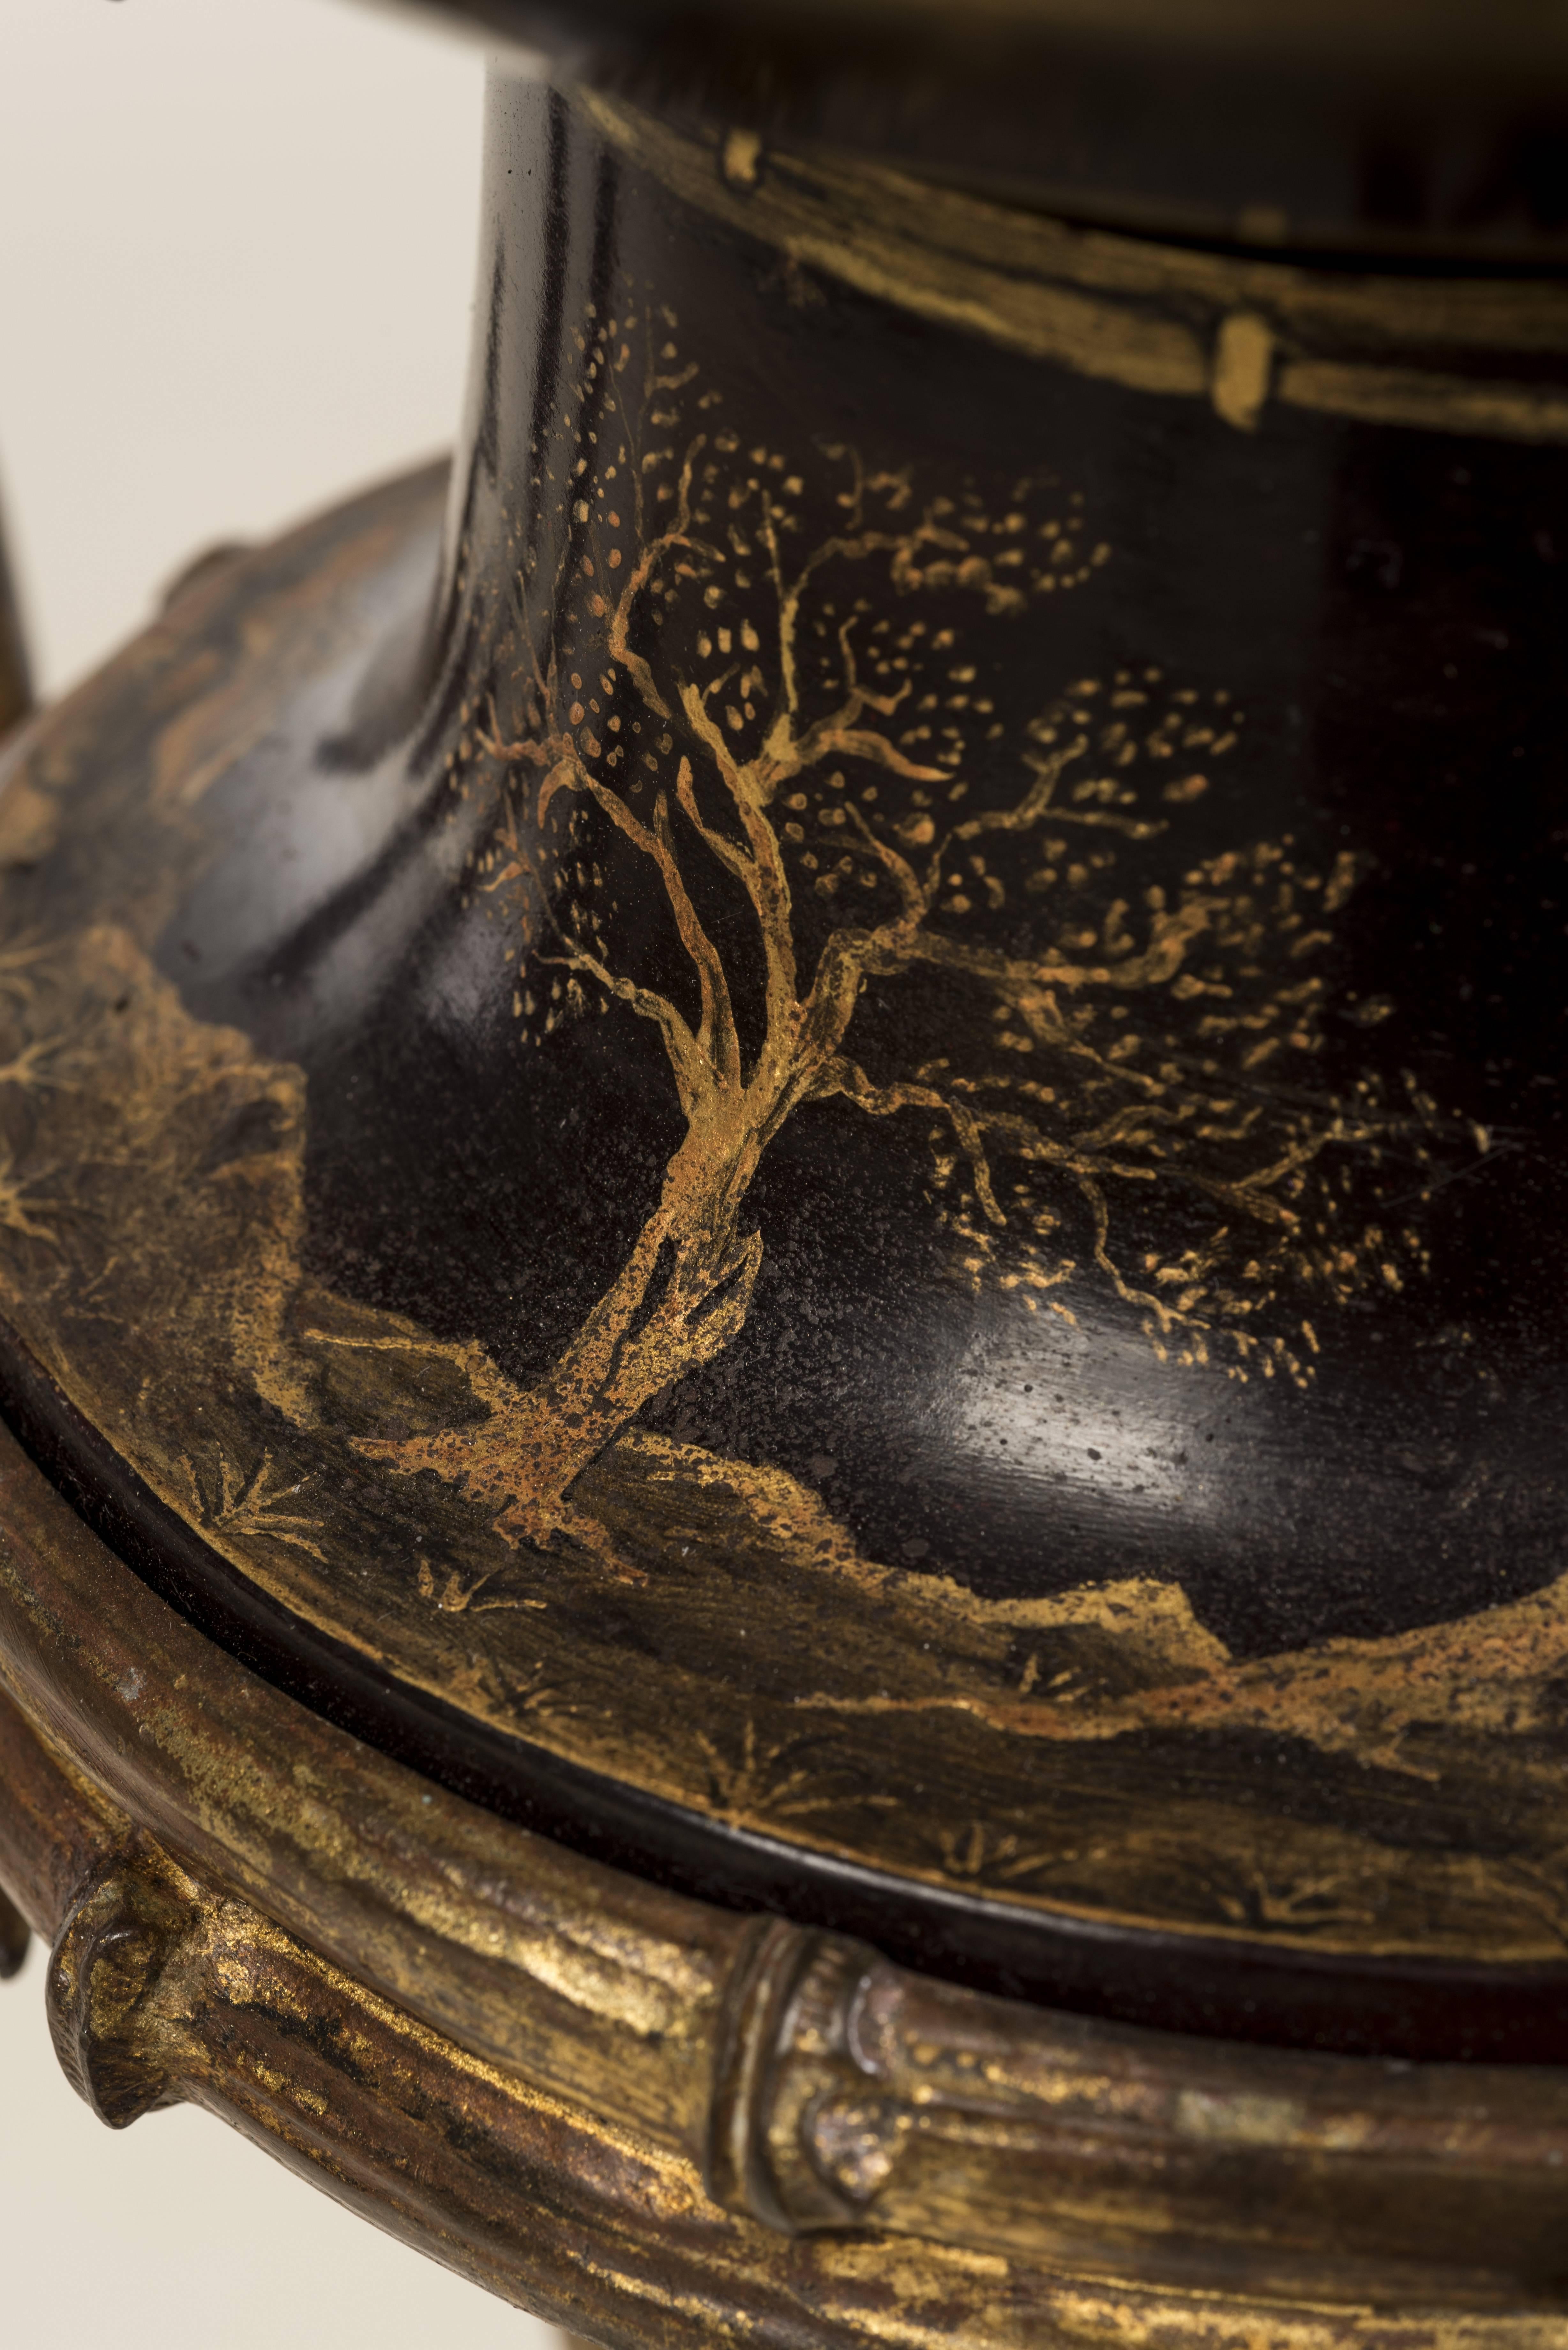 Vasenform von Jardinière Médicis aus Kupfer mit goldfarbenem Dekor auf weinrotem Hintergrund mit einer japanischen Landschaft mit einem Vulkan und einem Adler im Vordergrund.
Vergoldete Bronzegriffe in Form von geflügelten Drachen.
Dreibeiniger